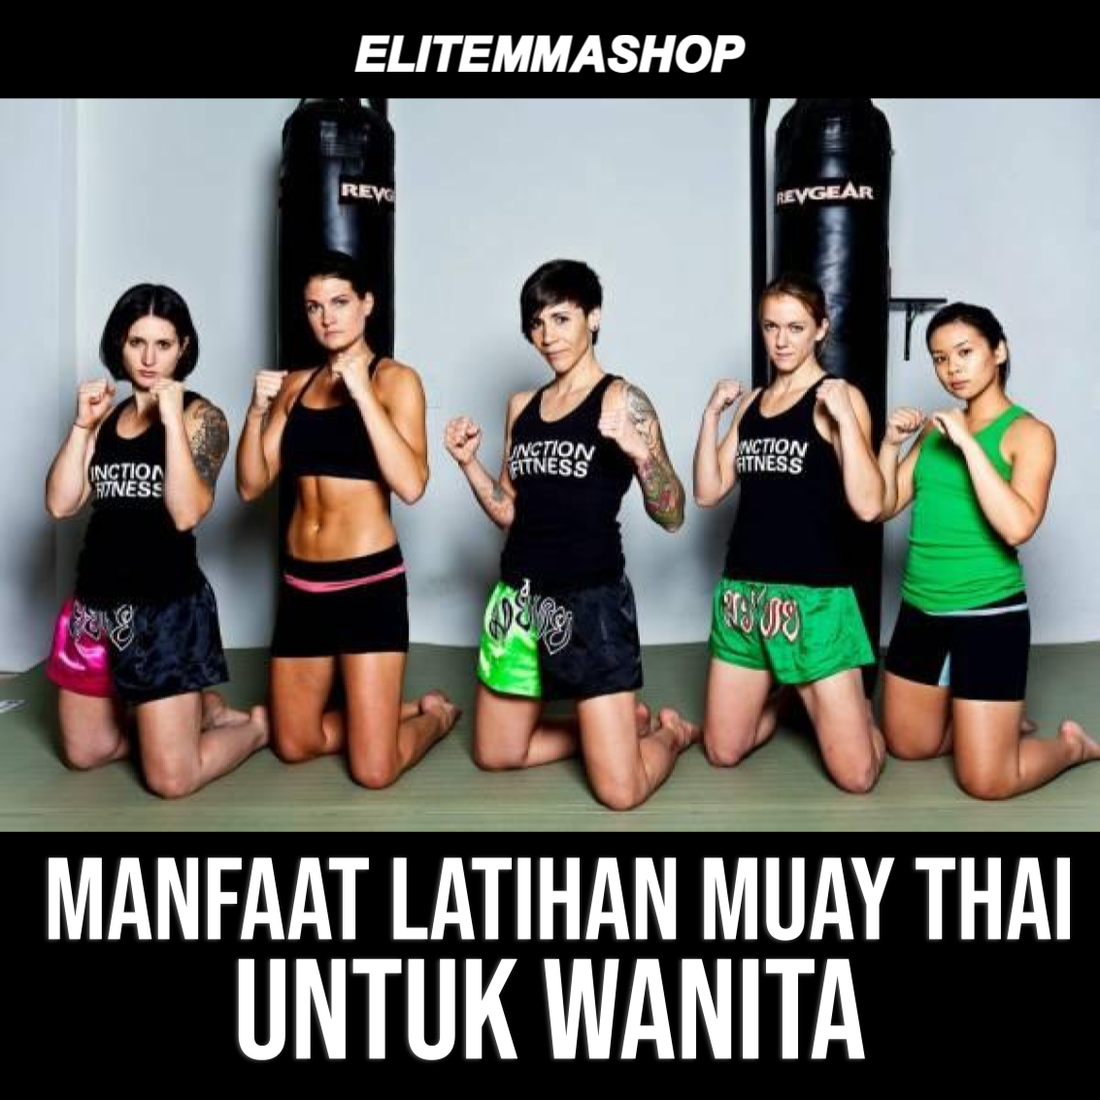 Manfaat Latihan Muay Thai untuk Wanita